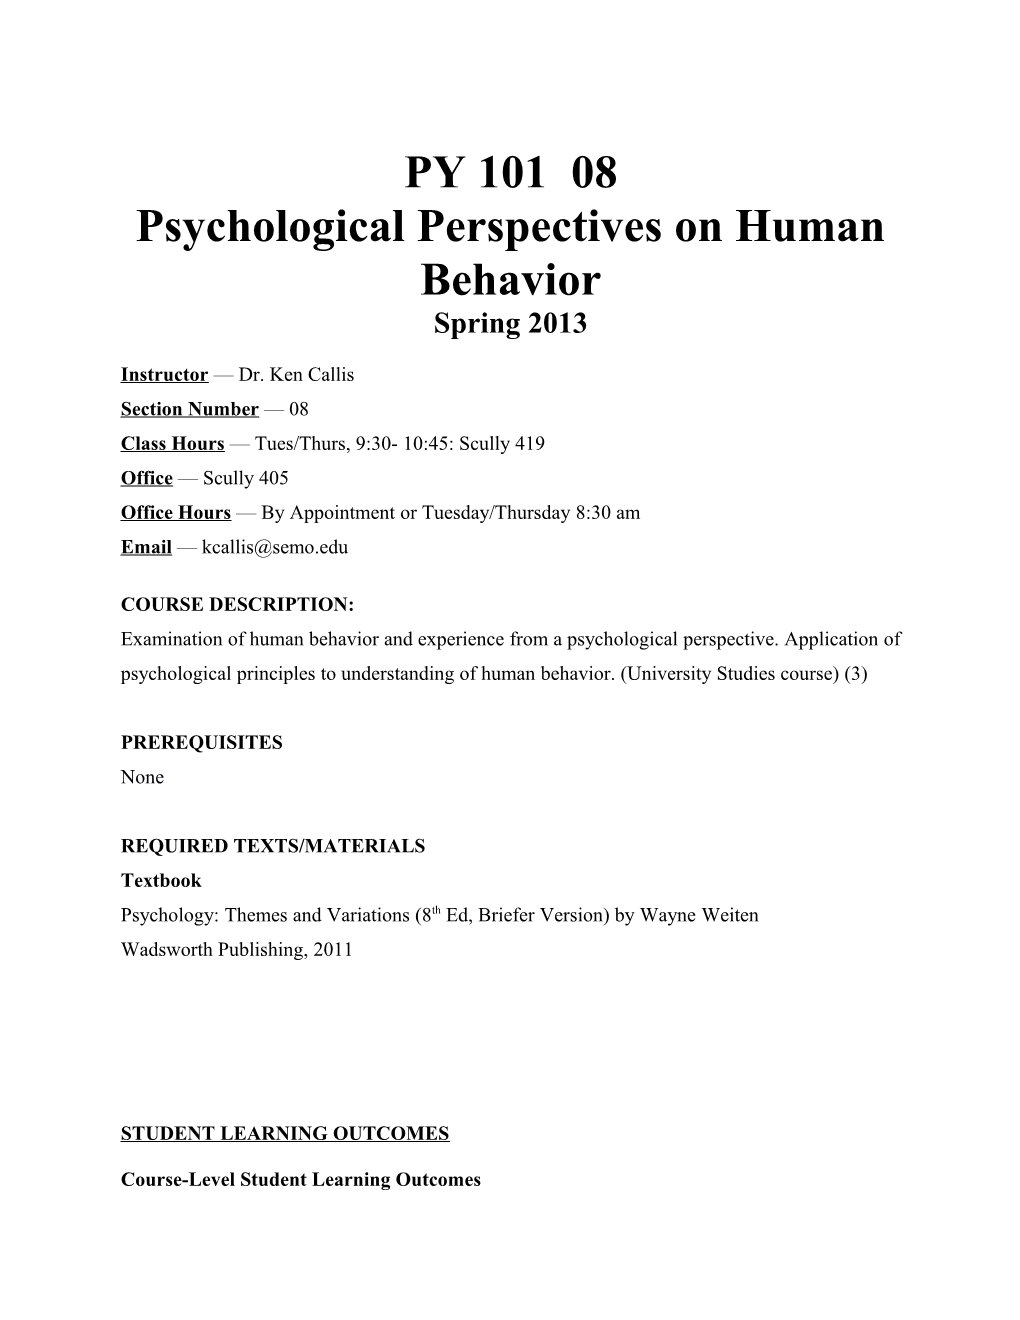 Psychological Perspectives on Human Behavior Spring 2013